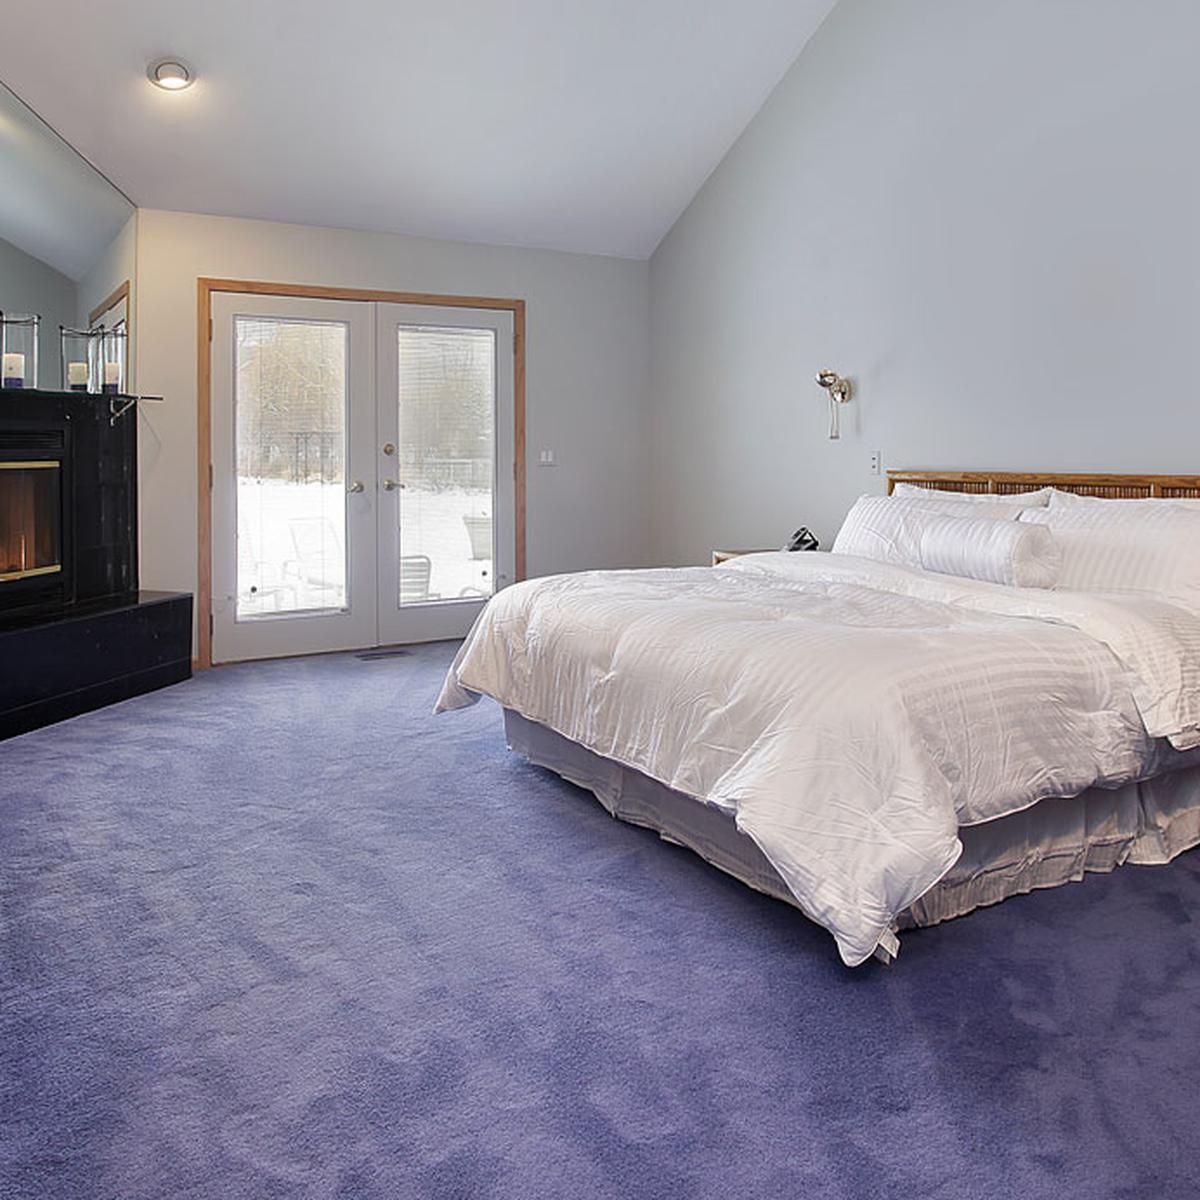 Abundancia Adquisición Incorporar Estos son los beneficios de tener una alfombra en tu habitación |  CASA-Y-MAS | EL COMERCIO PERÚ